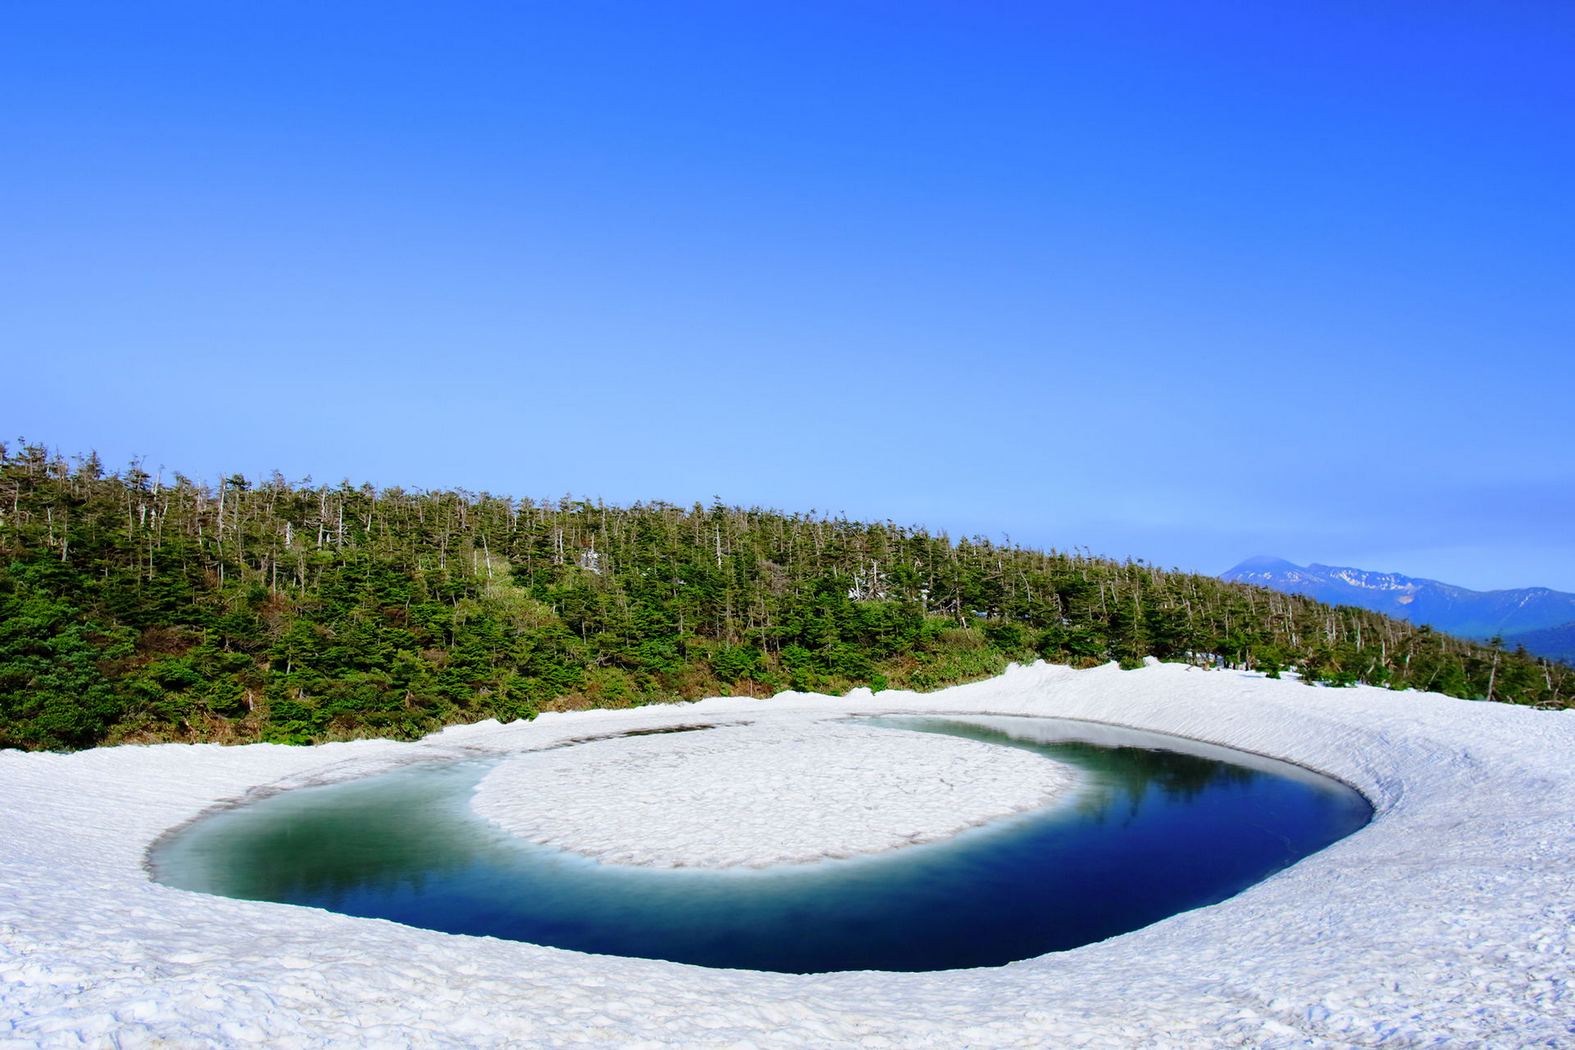 Kỳ lạ hồ Kagami Numa có thể thay đổi hình dạng theo mùa ở Nhật Bản